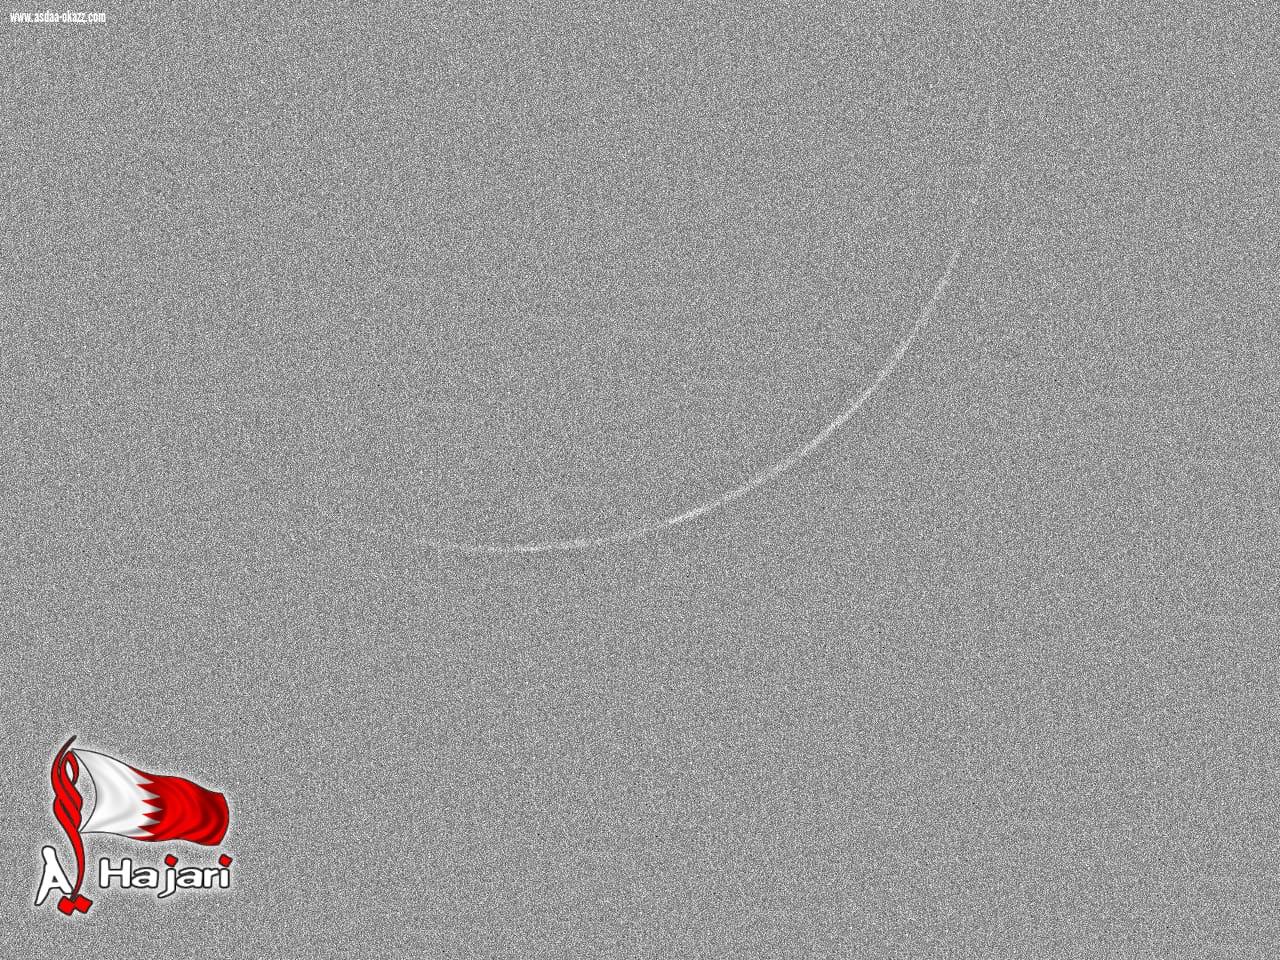 قمر ذو الحجة قبل وبعد غروب الشمس بالتلسكوب دون رؤية عينية في البحرين